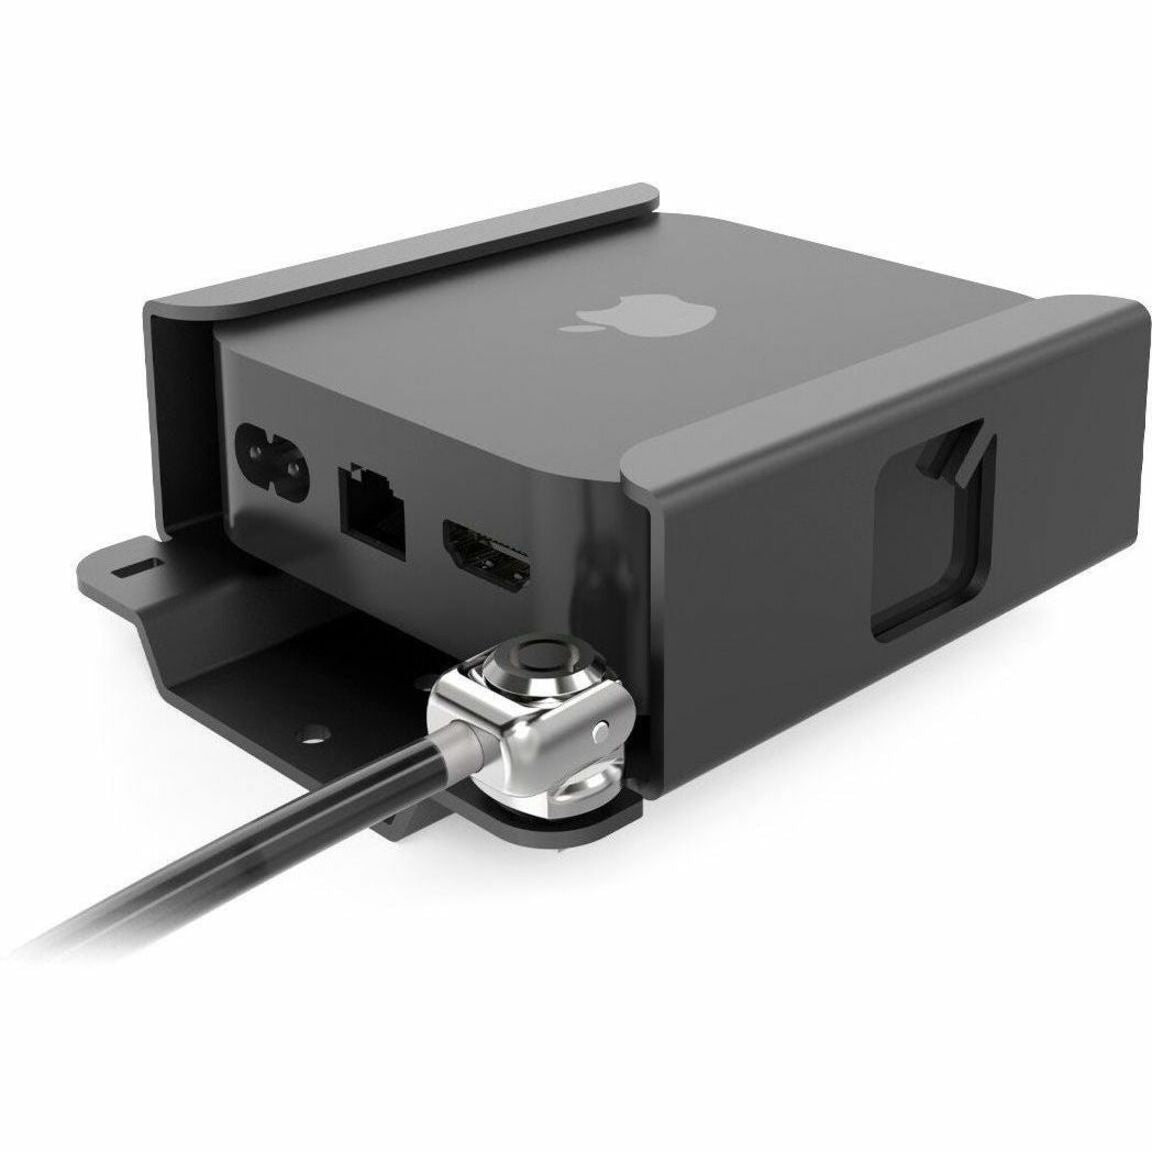 Compulocks ATV EN43 Soporte de seguridad de tercera generación para Apple TV 4K con cerradura de llave ventilación. Marca: Compulocks. Traducir "Compulocks" a "Bloqueos Computarizados".